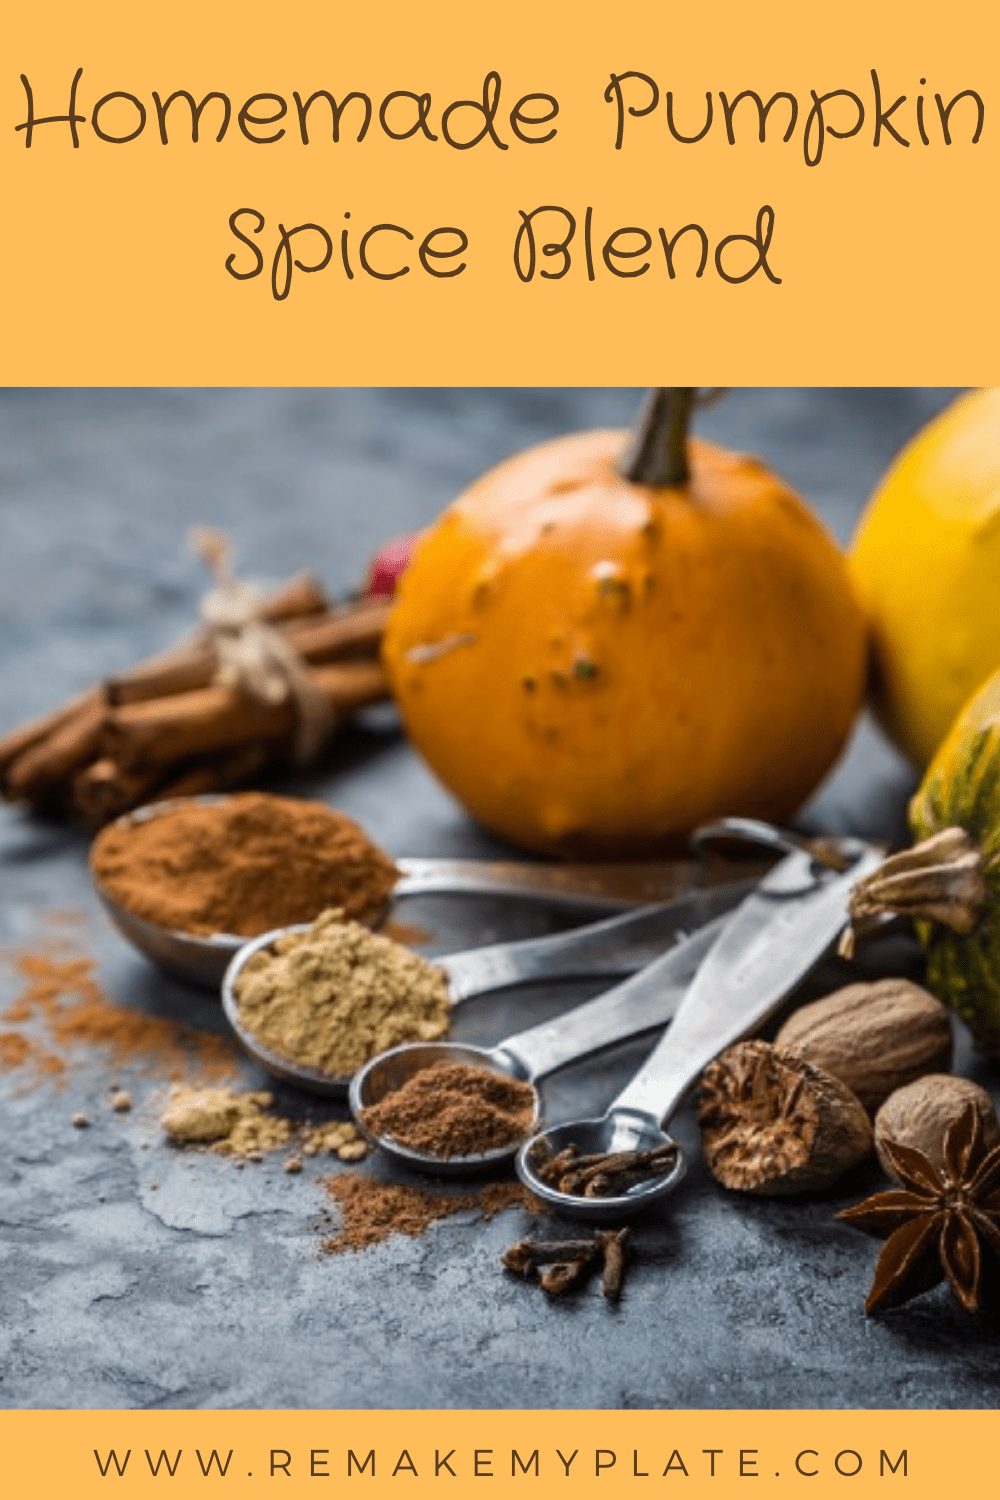 Make your own homemade pumpkin spice blend